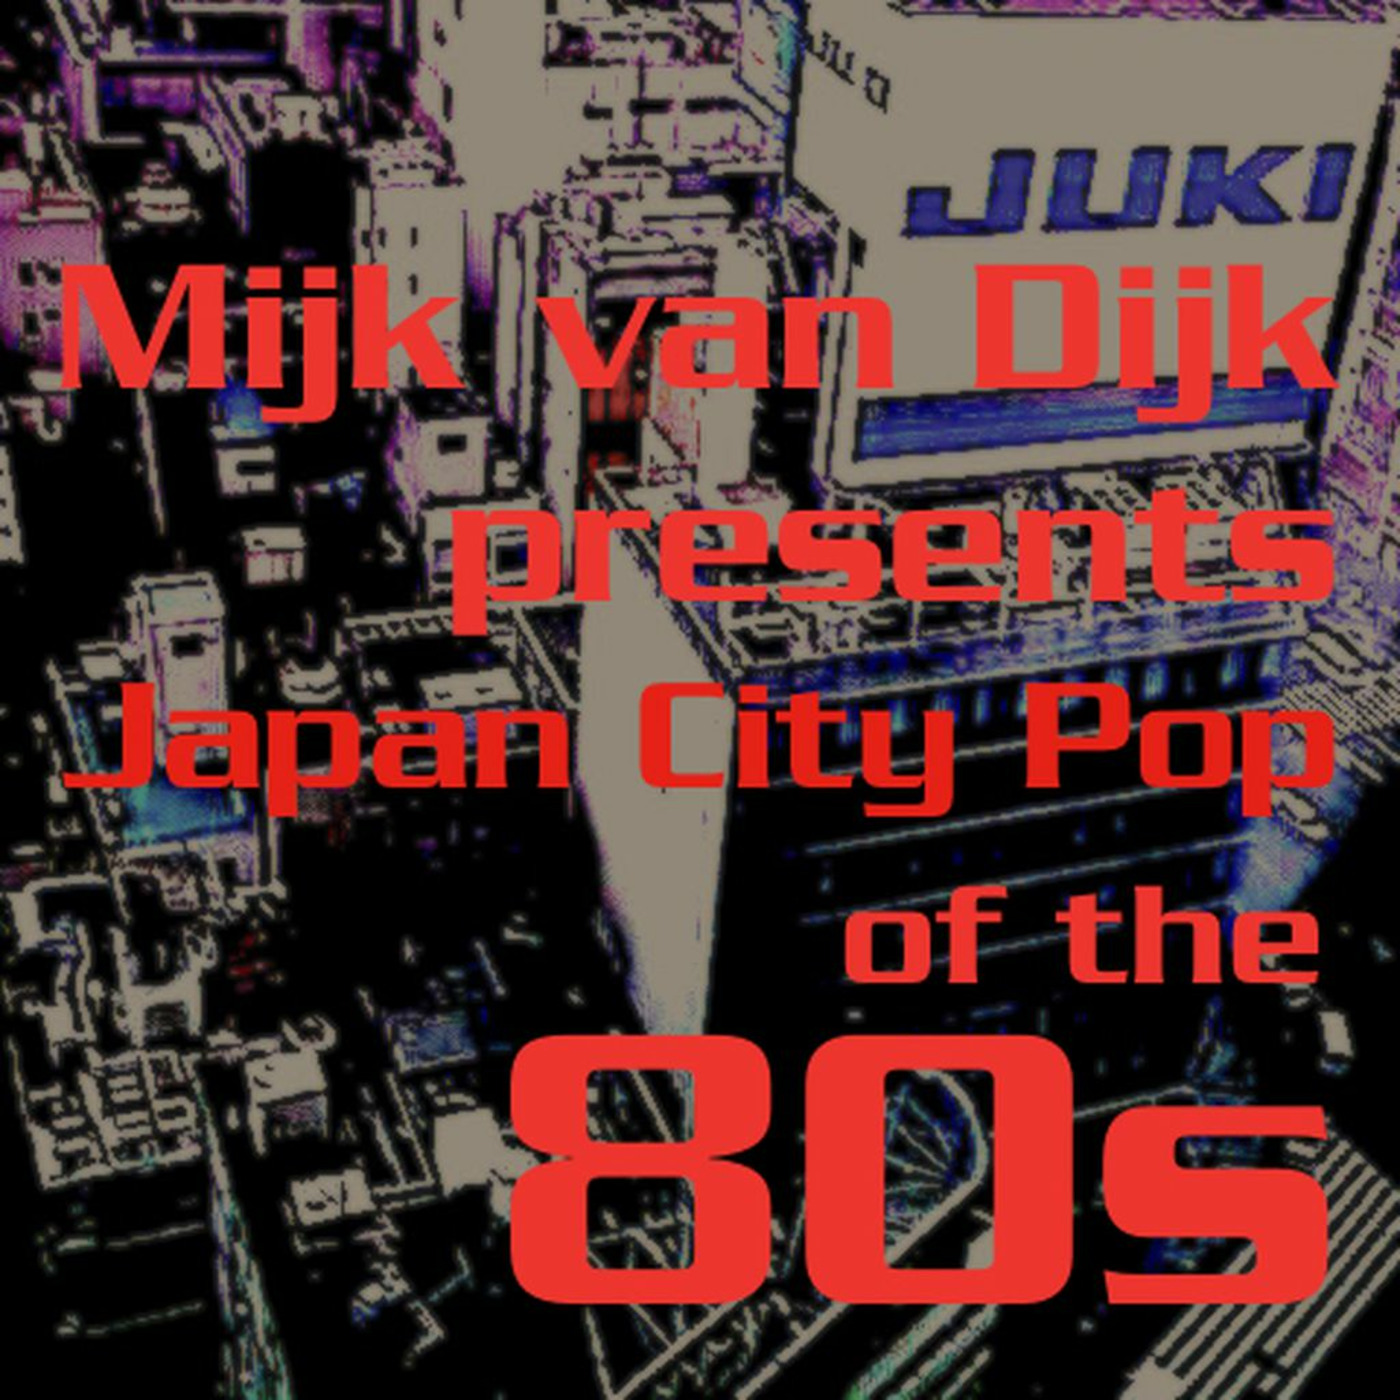 Mijk van Dijk presents Japan City Pop of the 80s